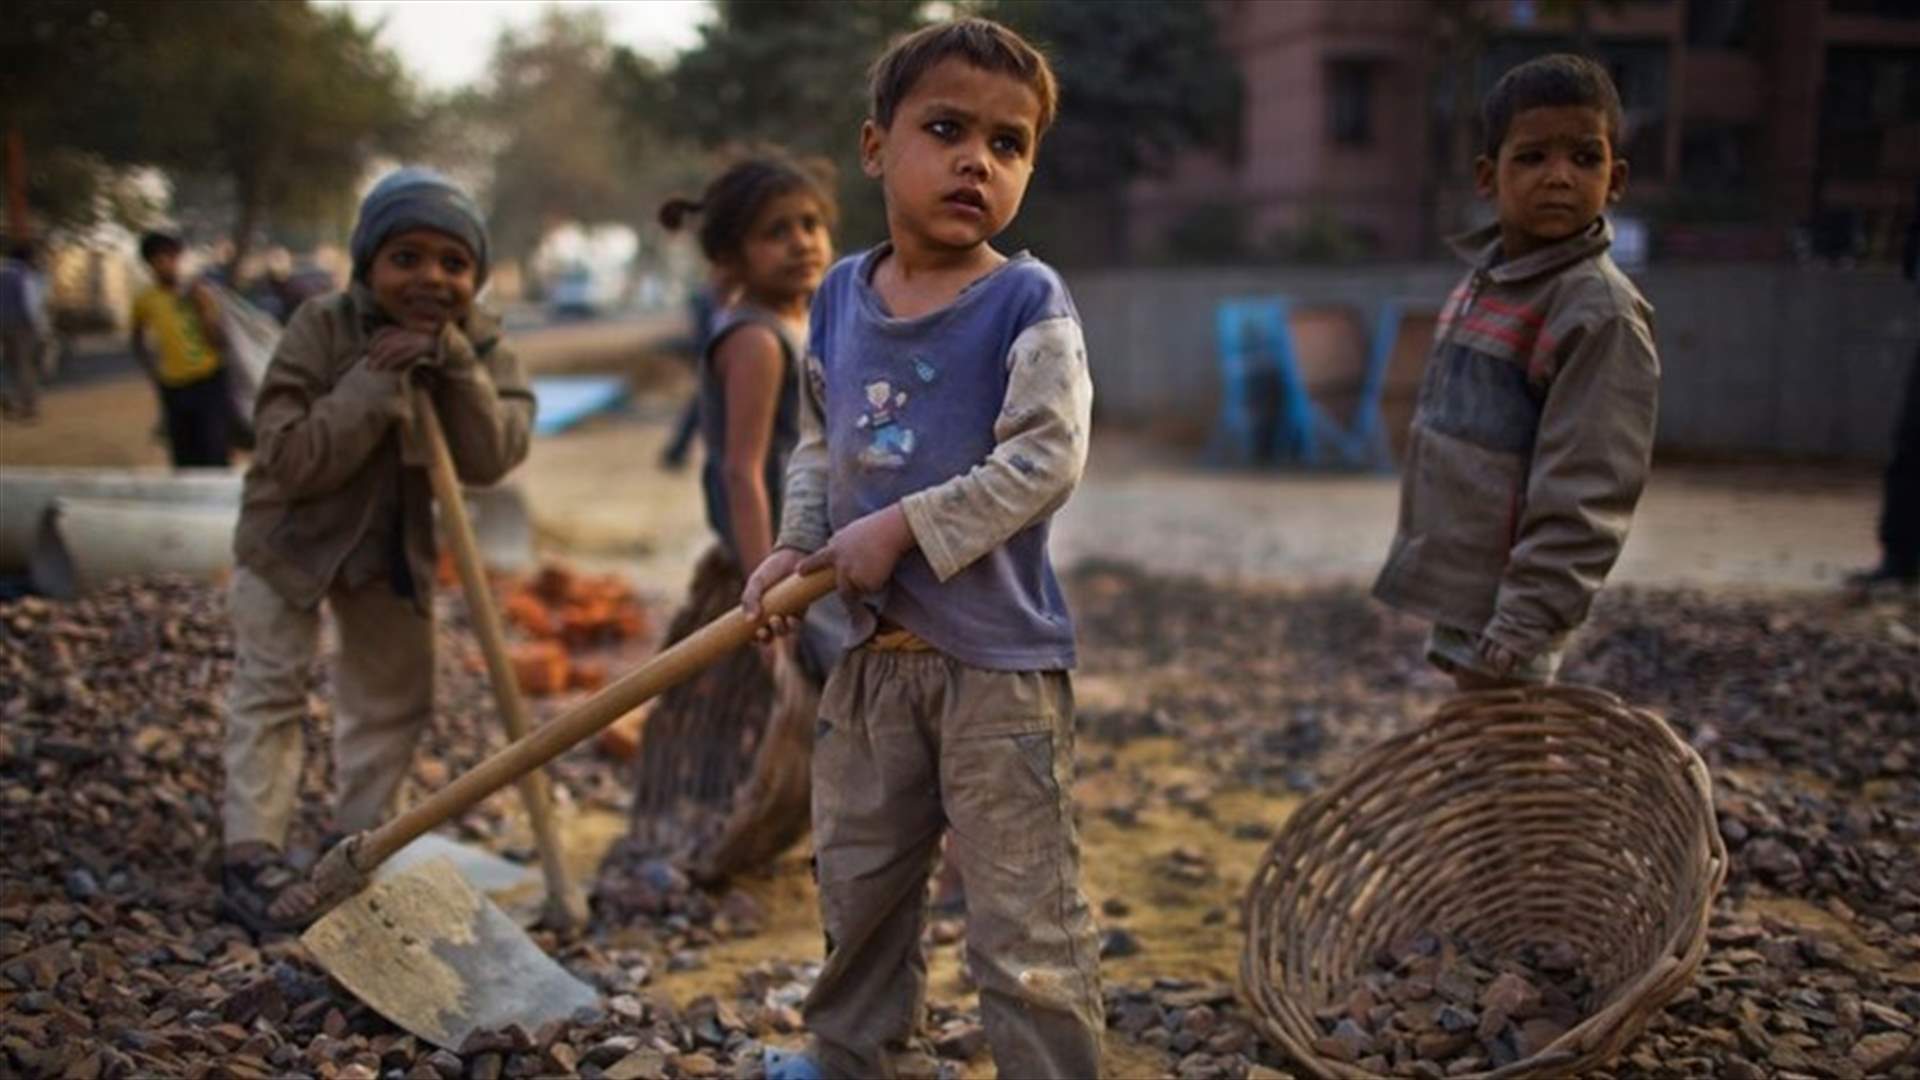 اليونسكو تُعلن... 244 مليون طفل غير ملتحقين بمدارس في العالم